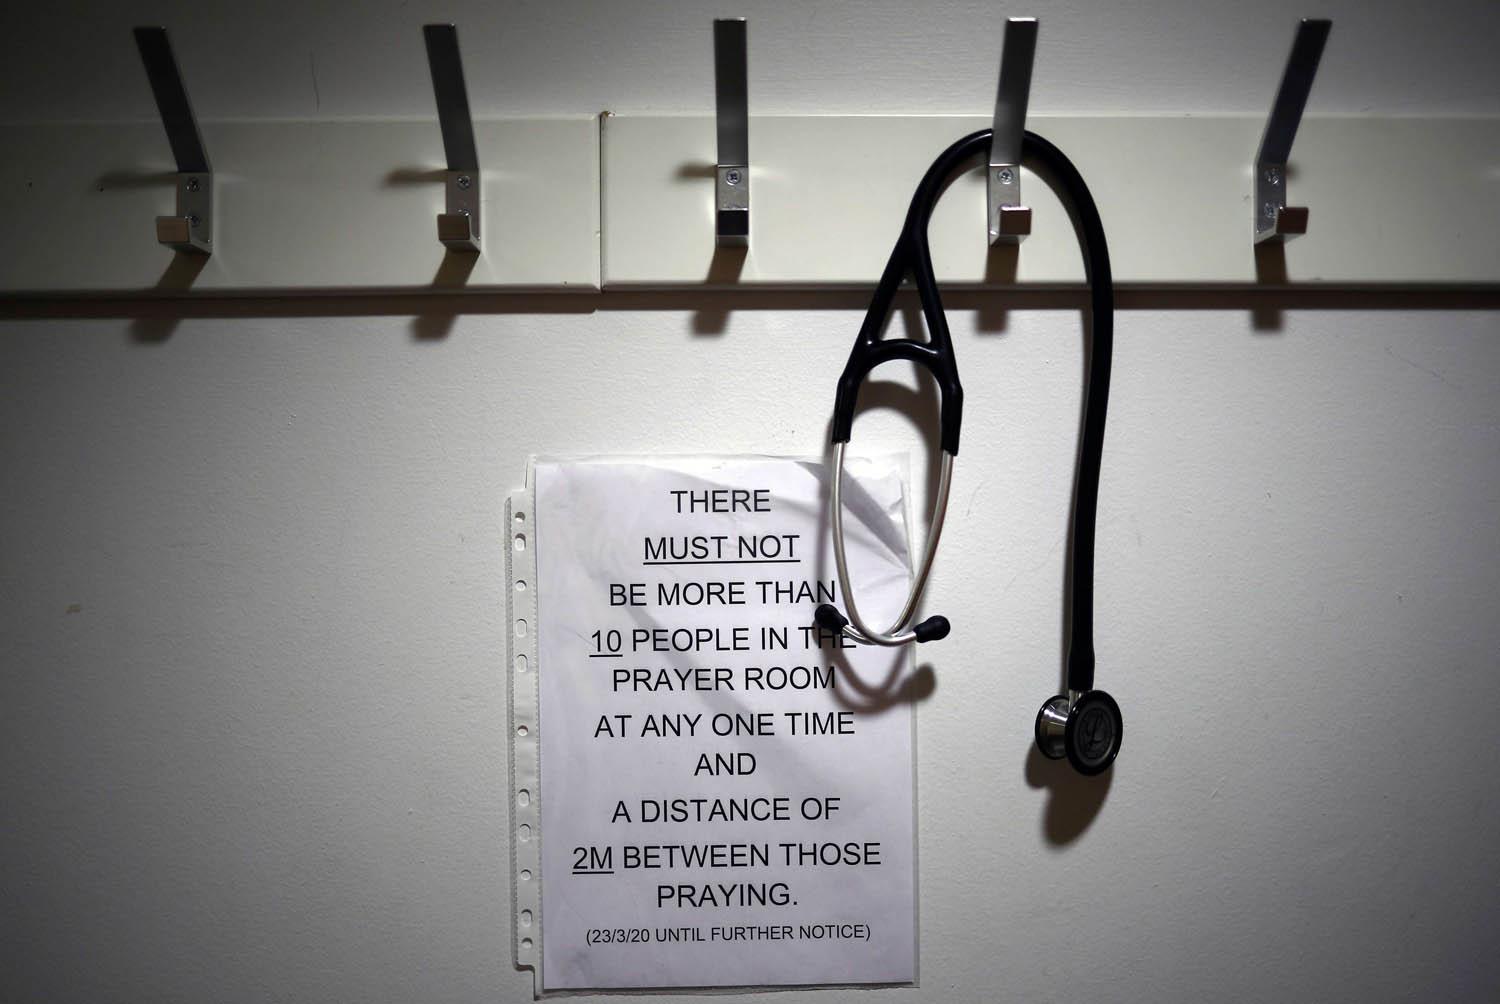 تعليمات للعاملين المسلمين في القطاع الصحي البريطاني لضمان القيام بصلواتهم